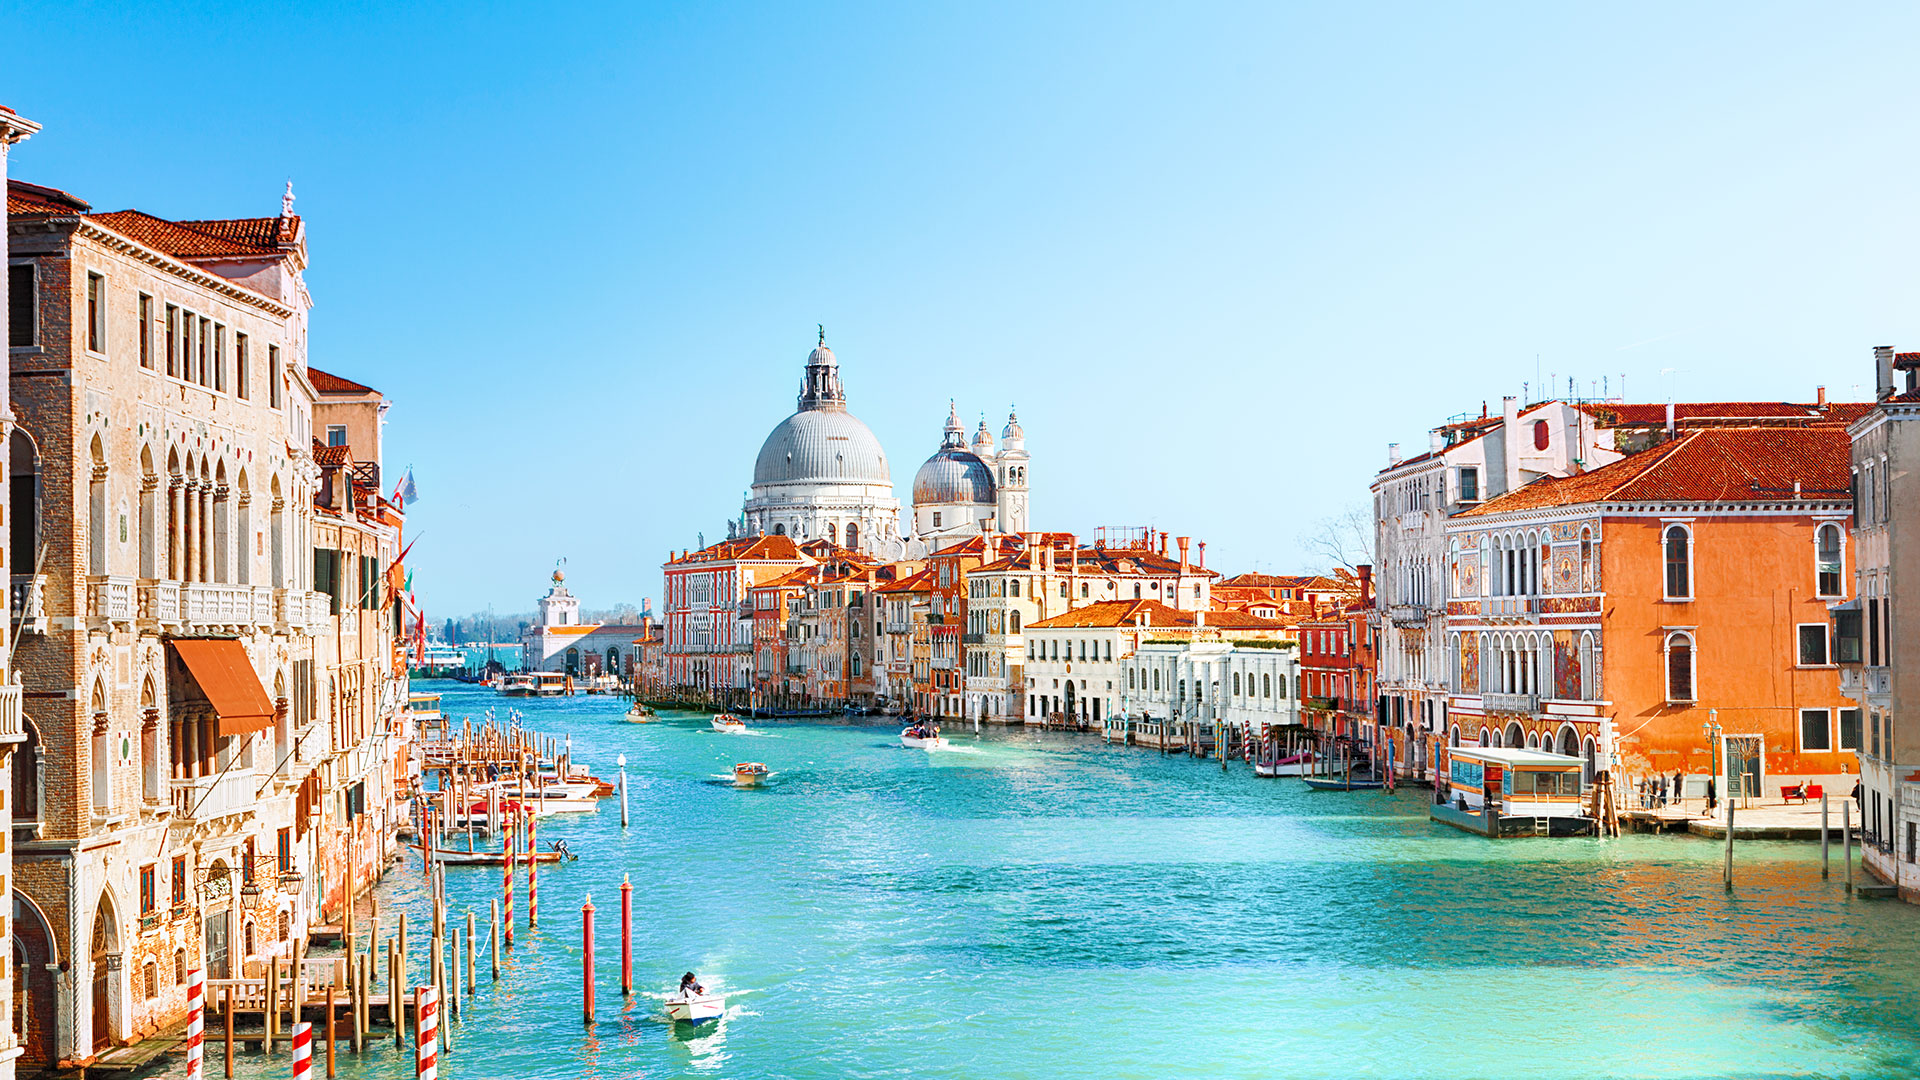 Jesolo Tagesausflug nach Venedig - wunderschöne Kanäle und der Markusdom